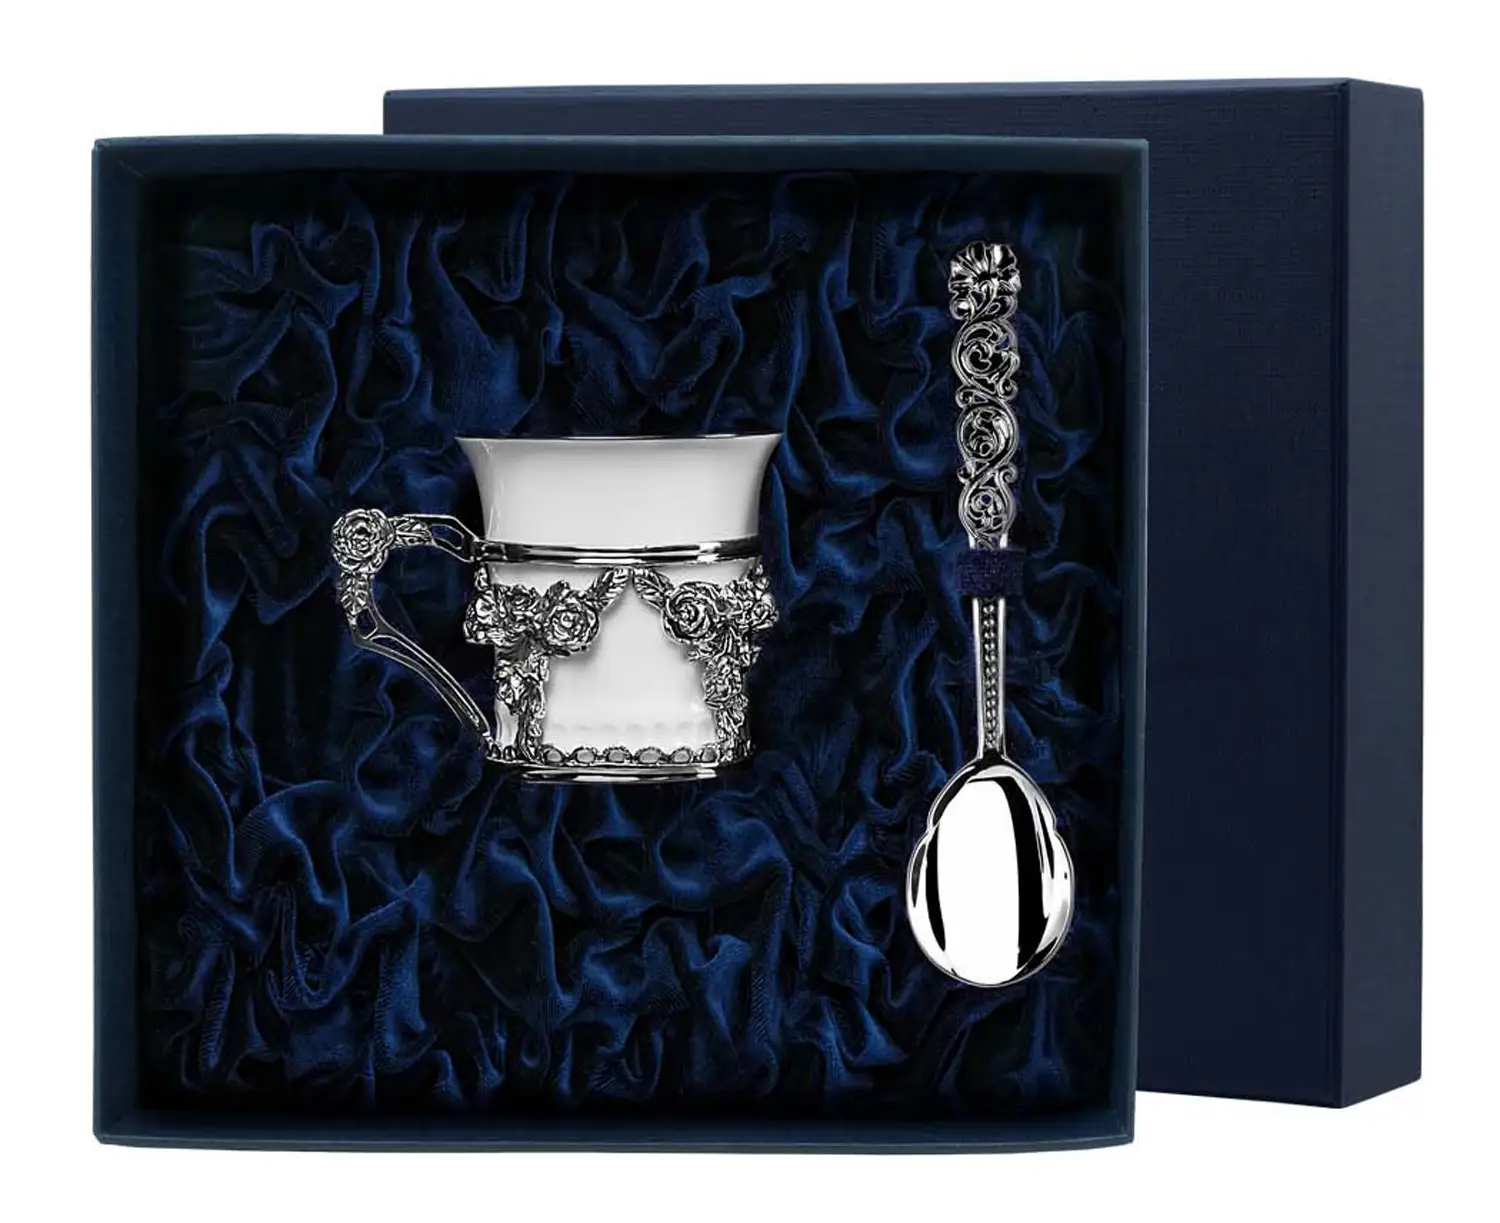 Набор кофейная чашка Роза: ложка, чашка (Серебро 925) набор чашка кофейная листопад ложка из серебра